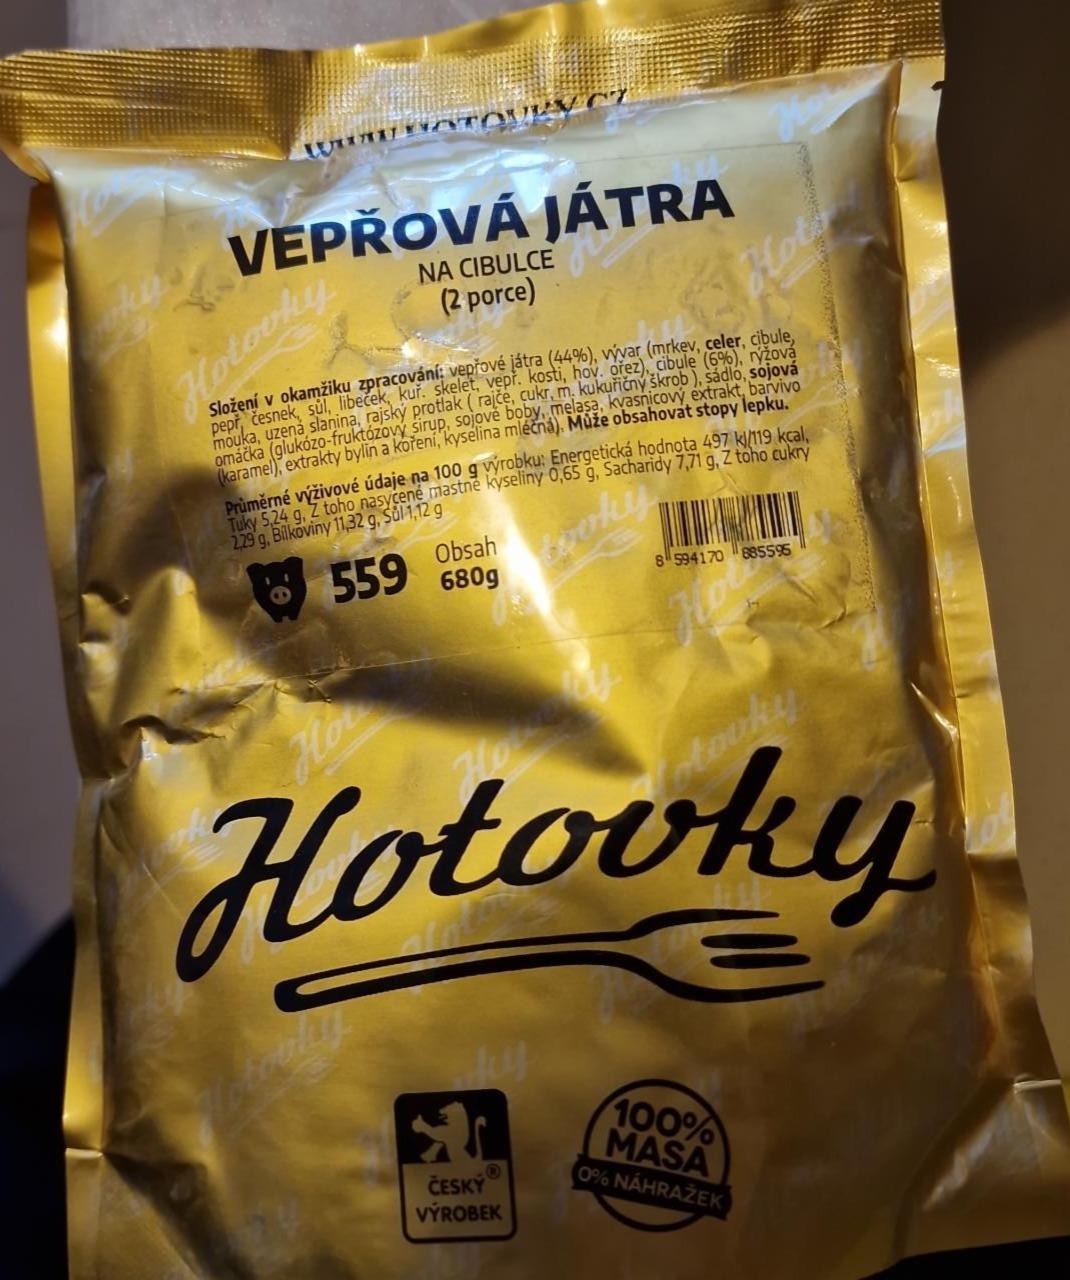 Fotografie - Vepřová játra na cibulce Hotovky.cz